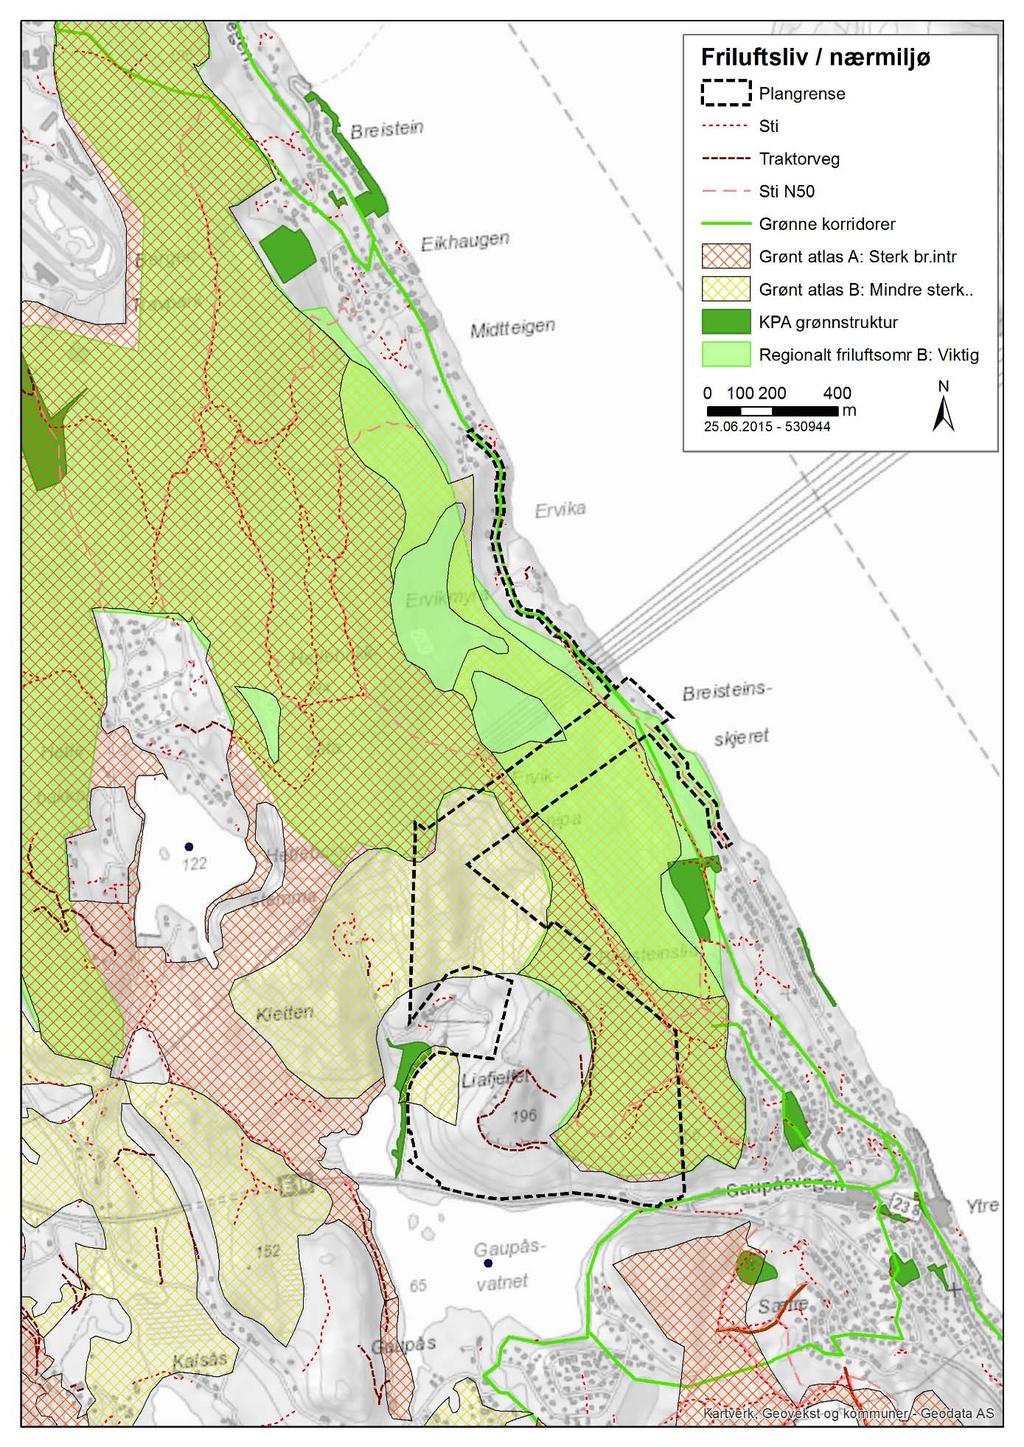 Arna steinknuseverk friluftsliv og nærmiljø 7 Figur 1: Kartet viser turveier / stier, områder med brukerinteresser for friluftsliv jamfør Grønt